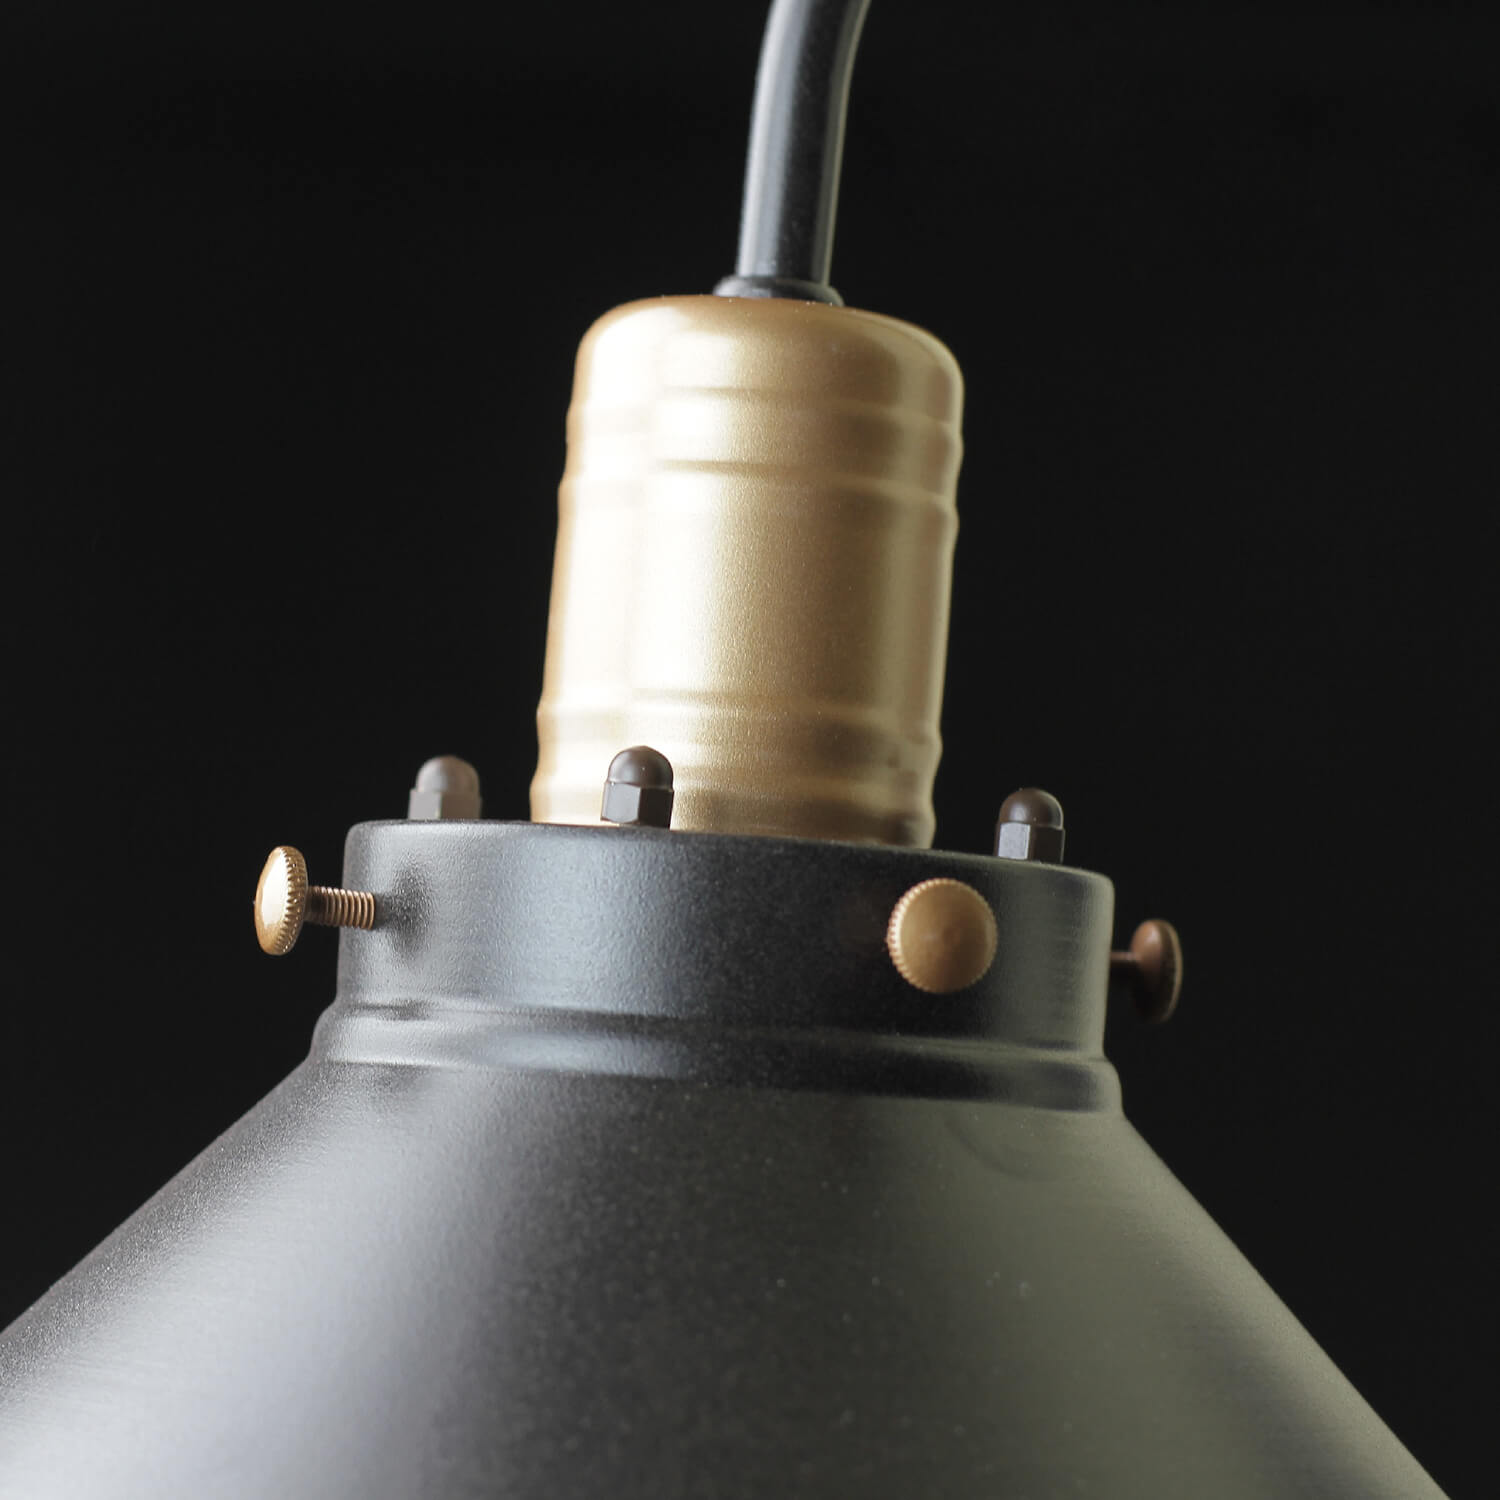 Industrie Wandlampe Schwarz Kupfer E27 T:40cm LOFT